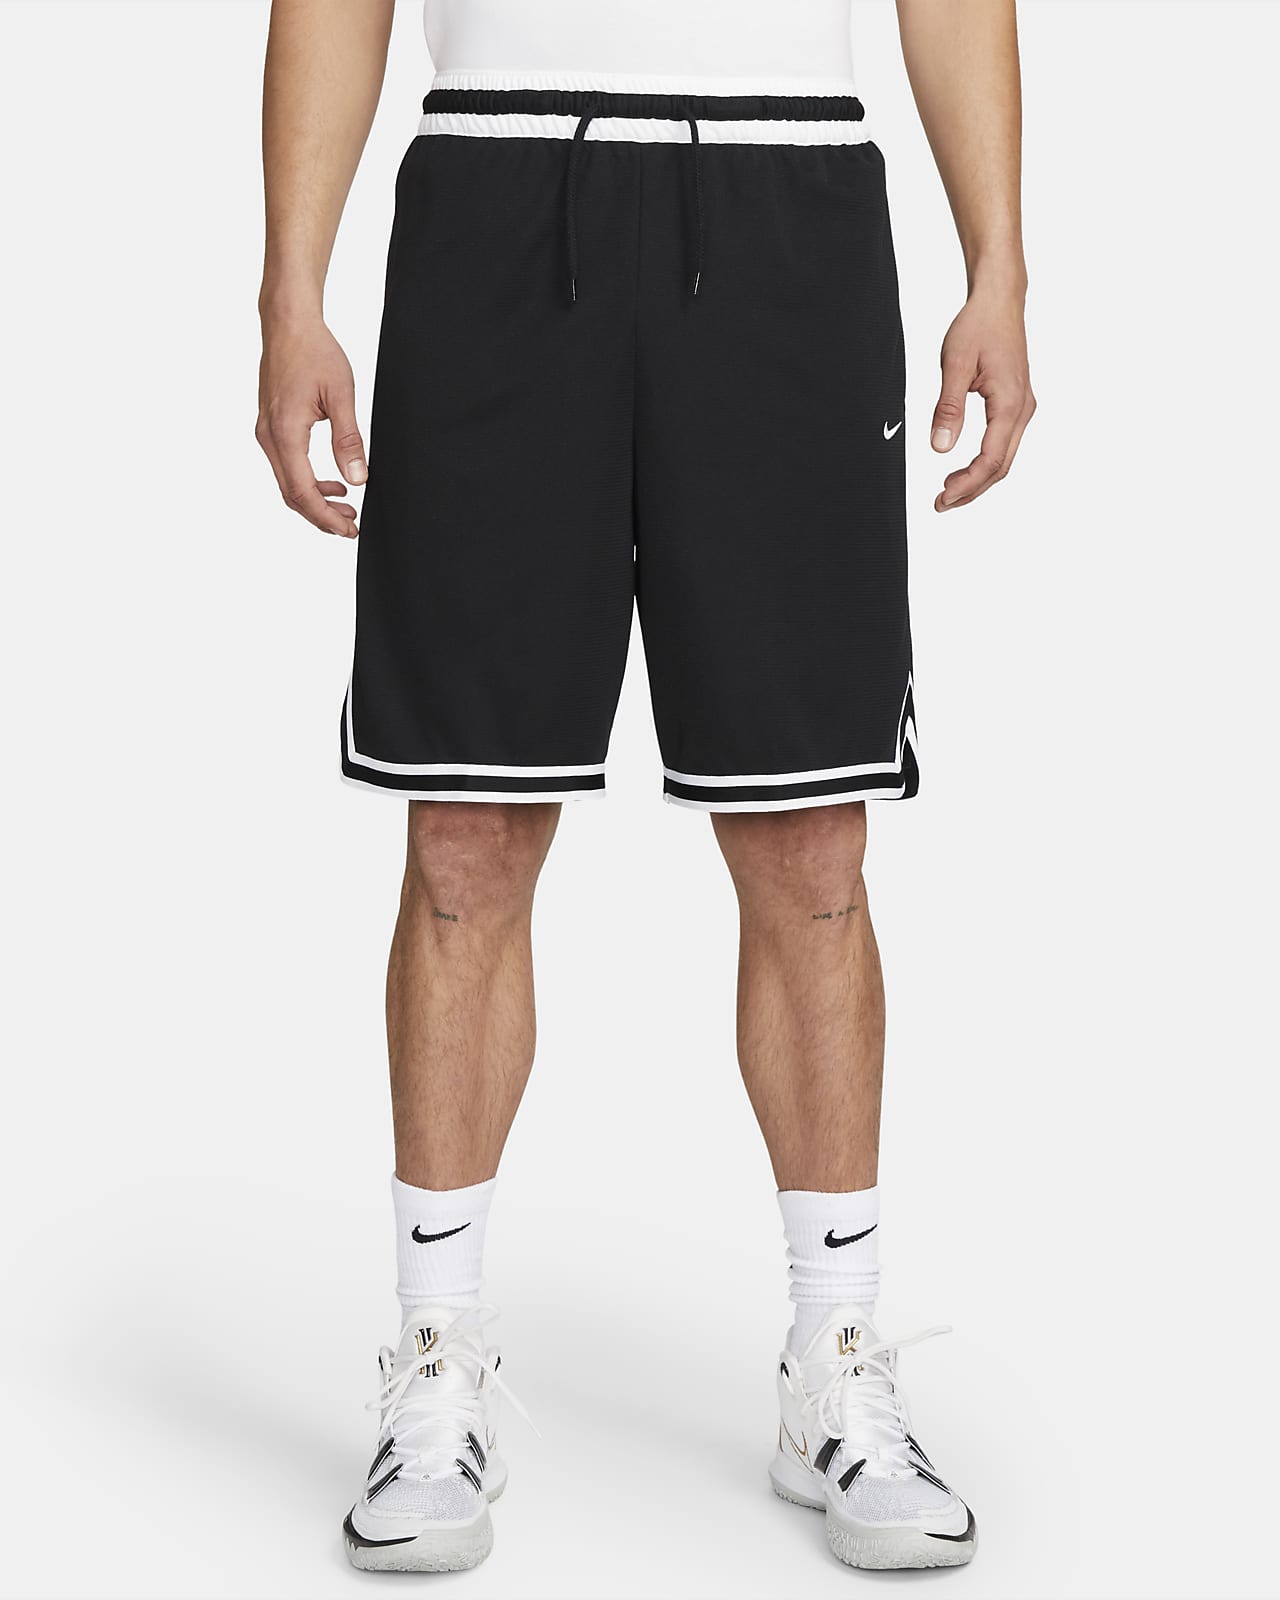 Shorts de básquetbol para hombre Nike Dri-FIT DNA